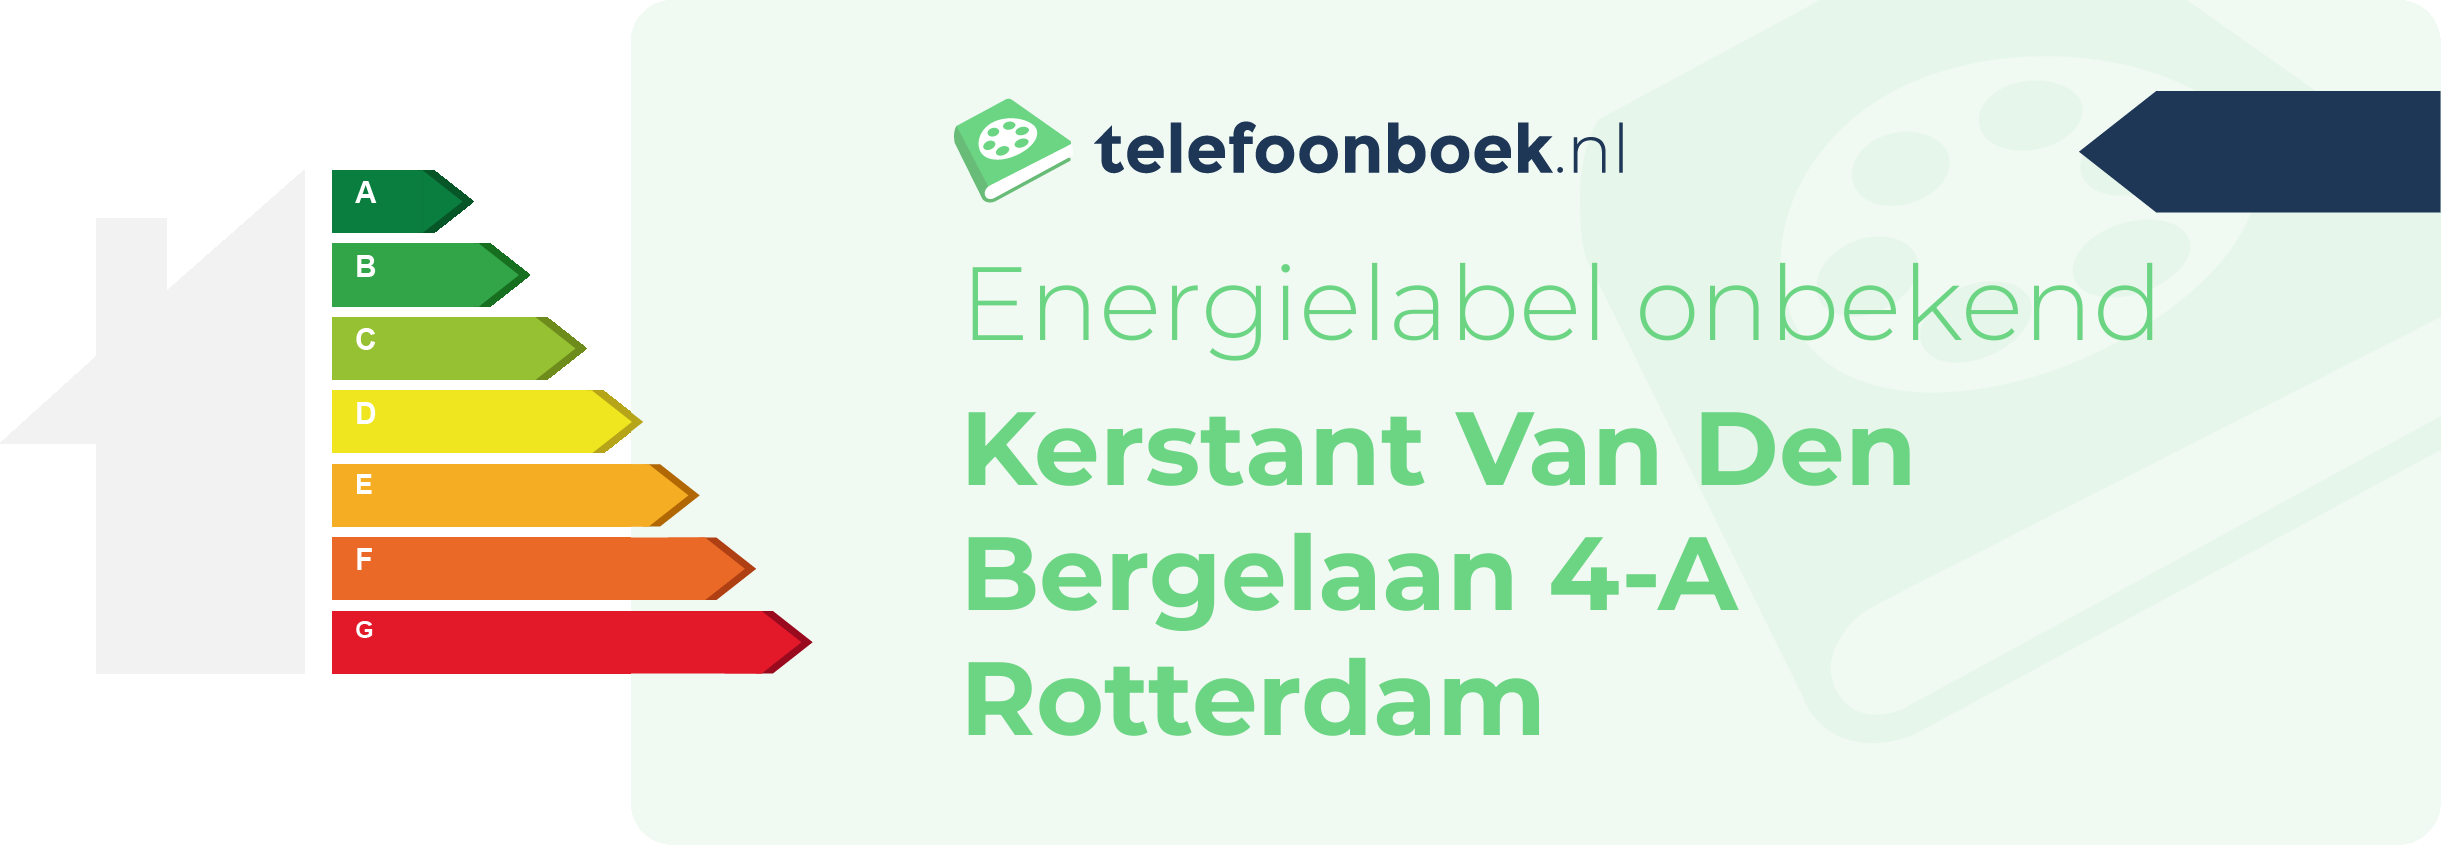 Energielabel Kerstant Van Den Bergelaan 4-A Rotterdam